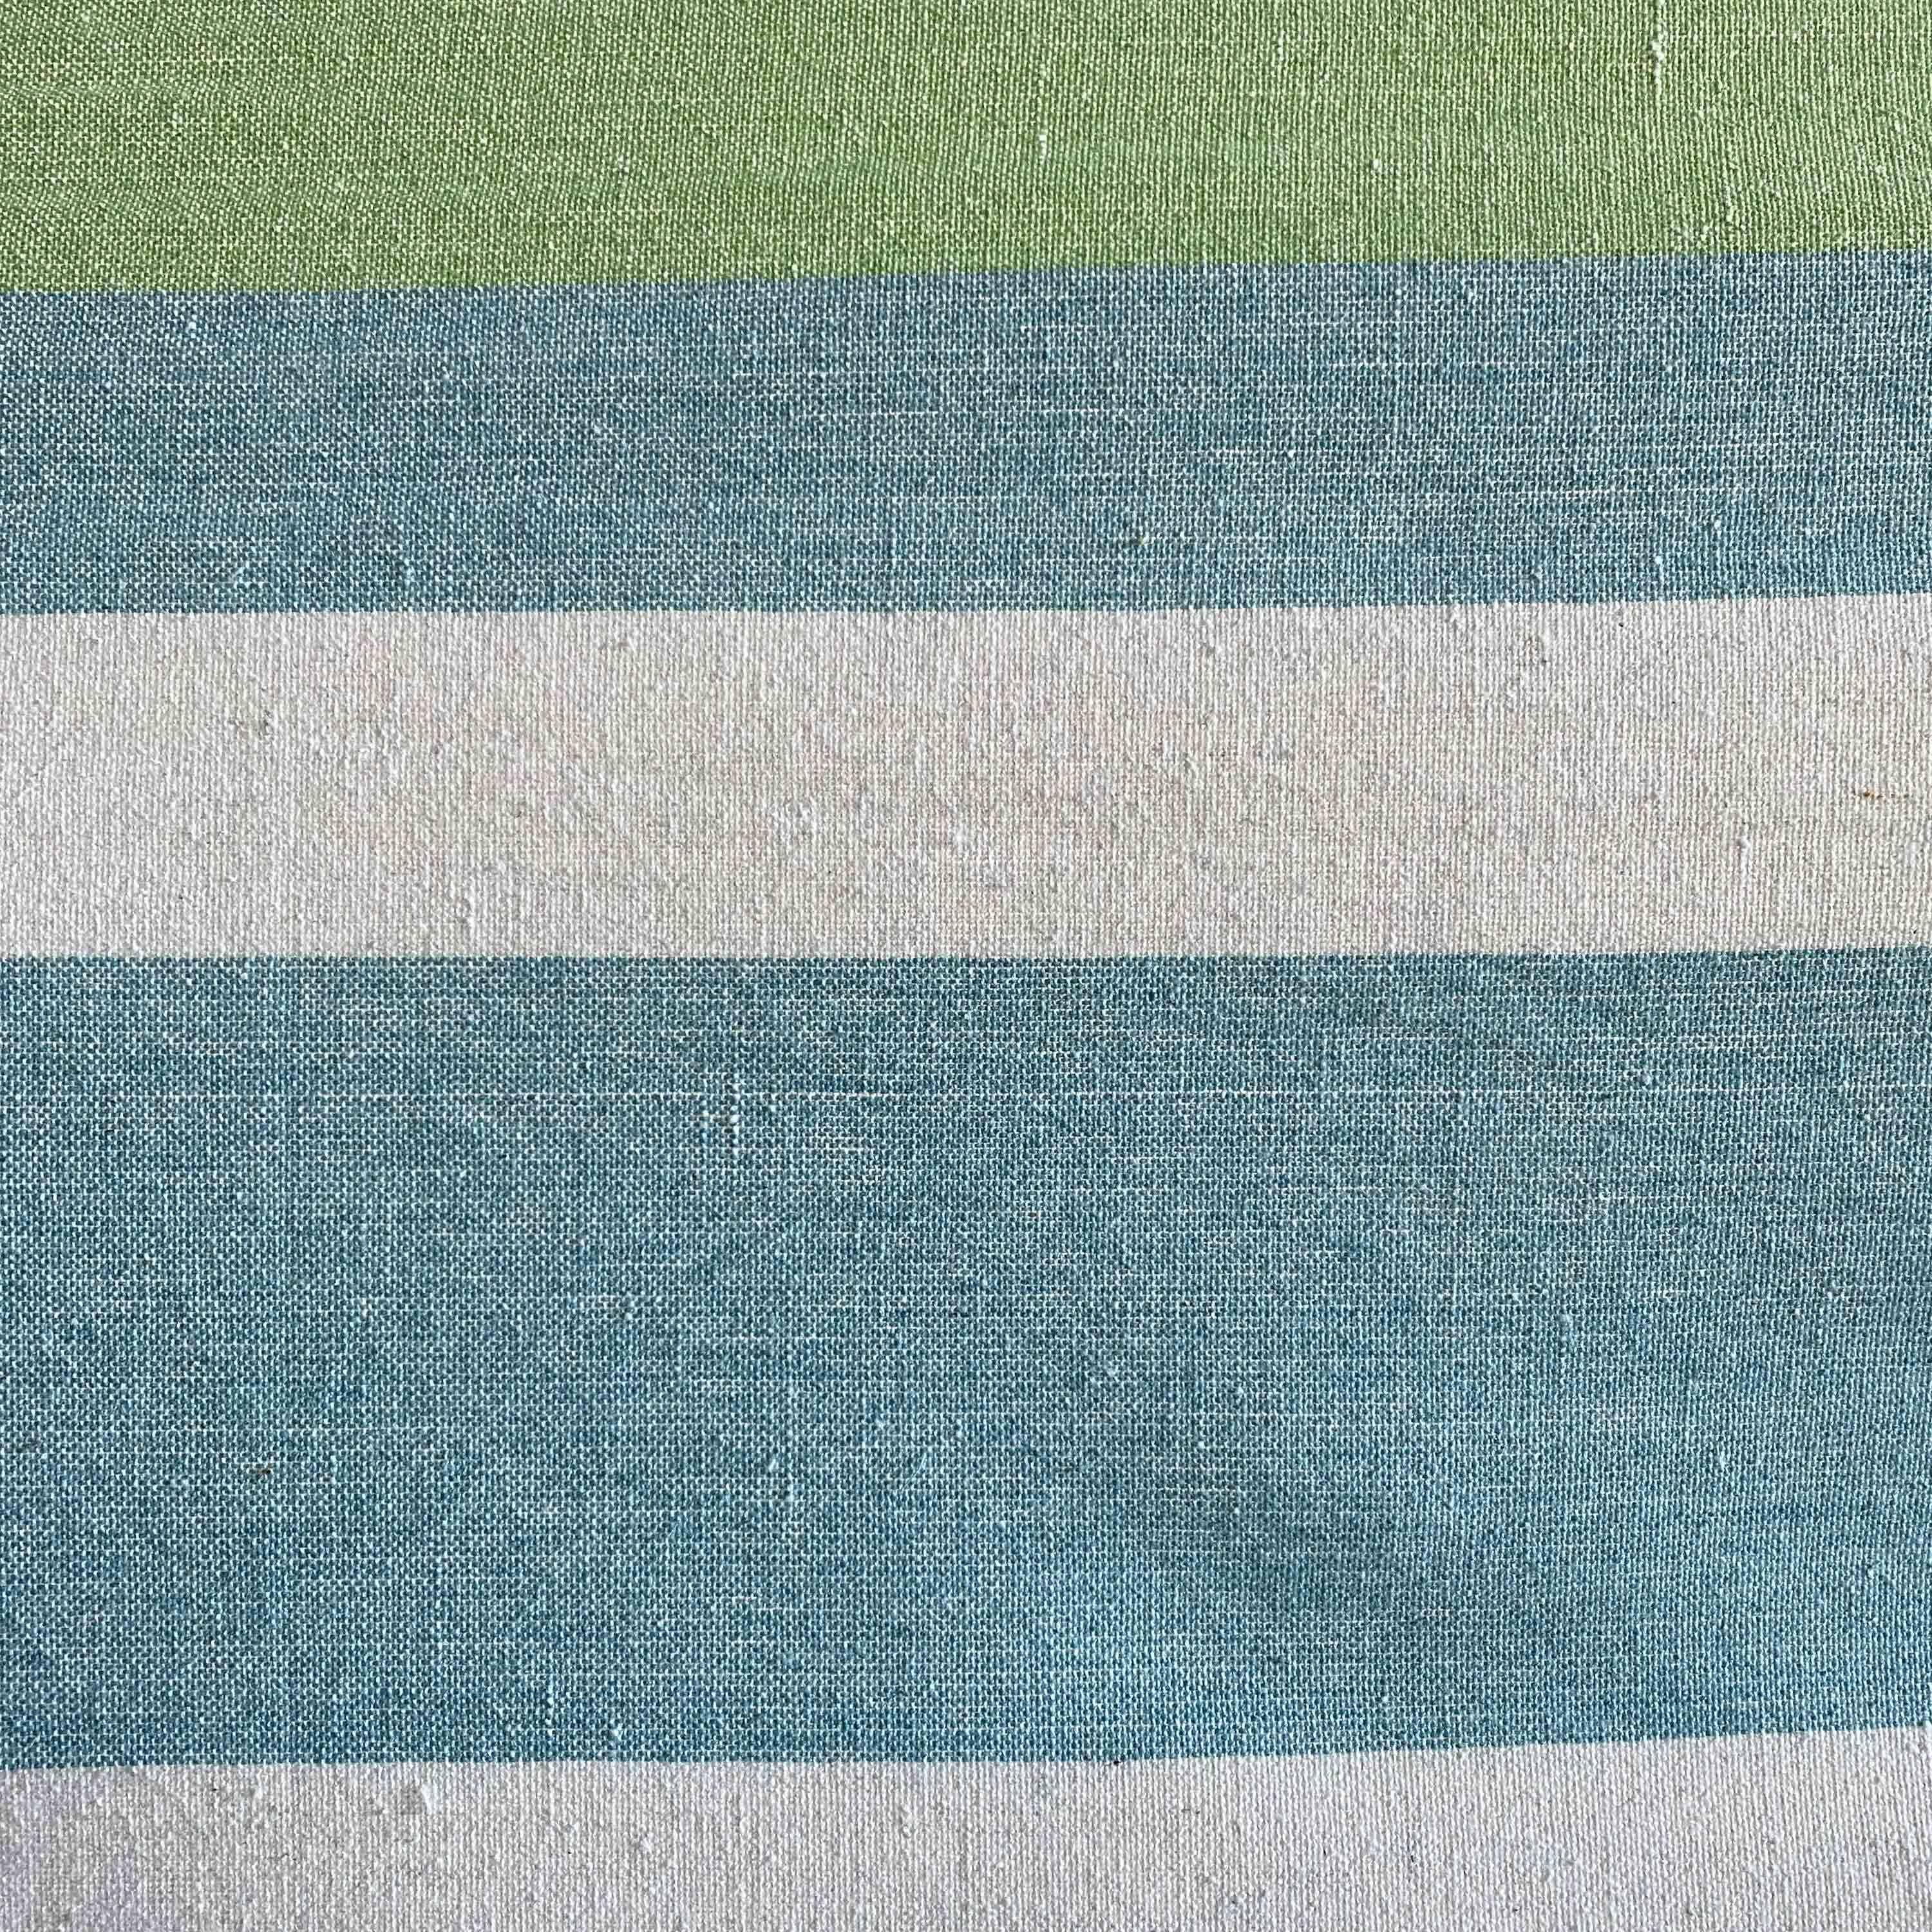 Hängemattenbezug für 1 Person, 100% Baumwolle, 110 x 220 cm, blau und grün gestreift, mit Seilen und Karabinern Photo2